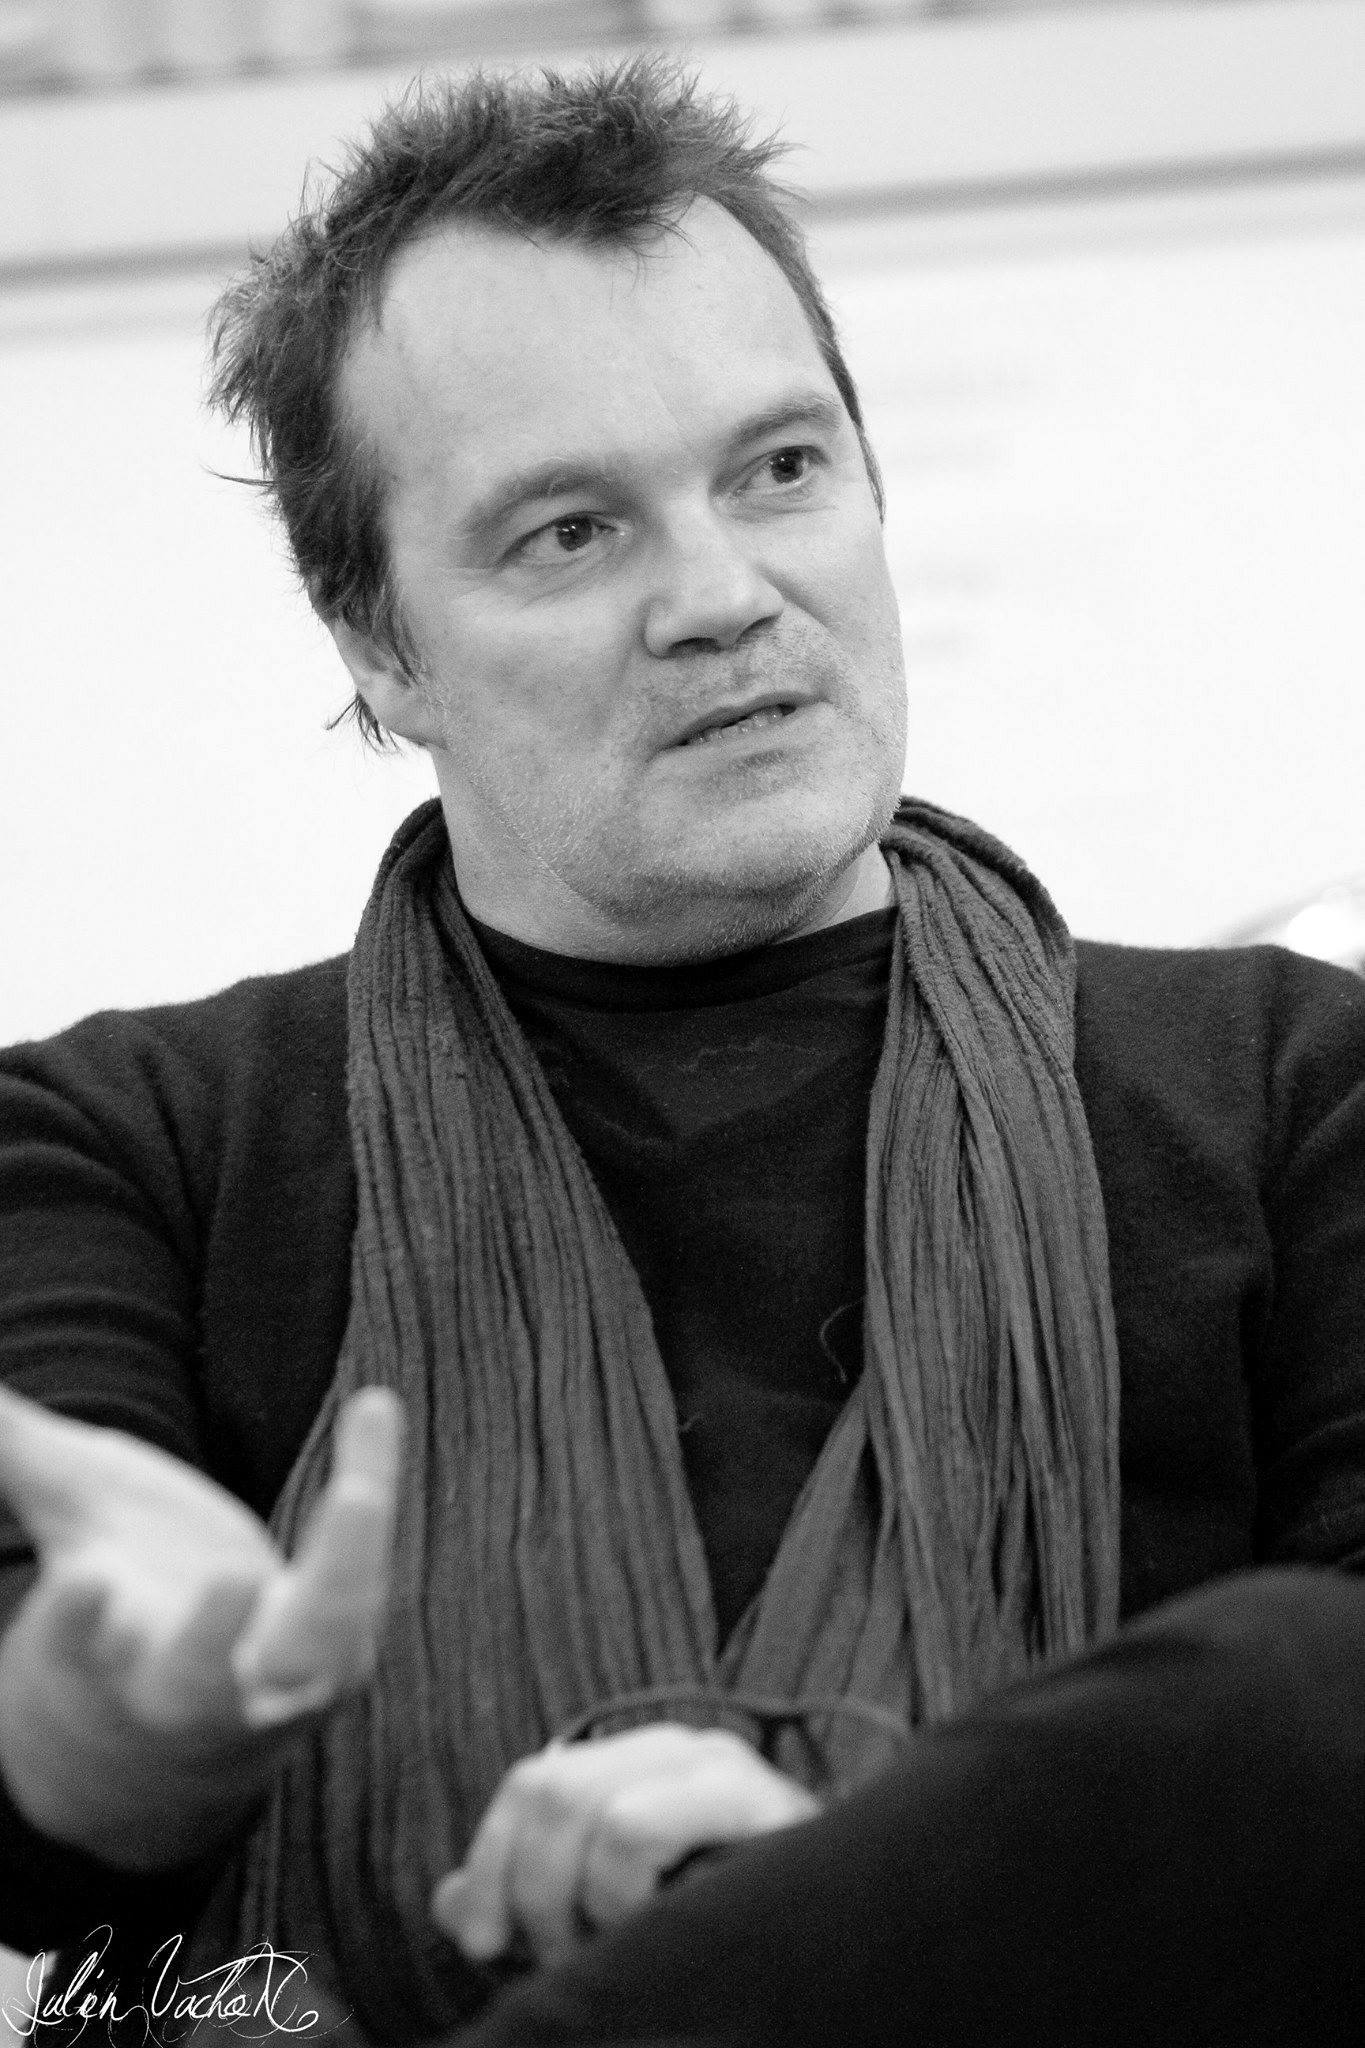 Axel Bauer